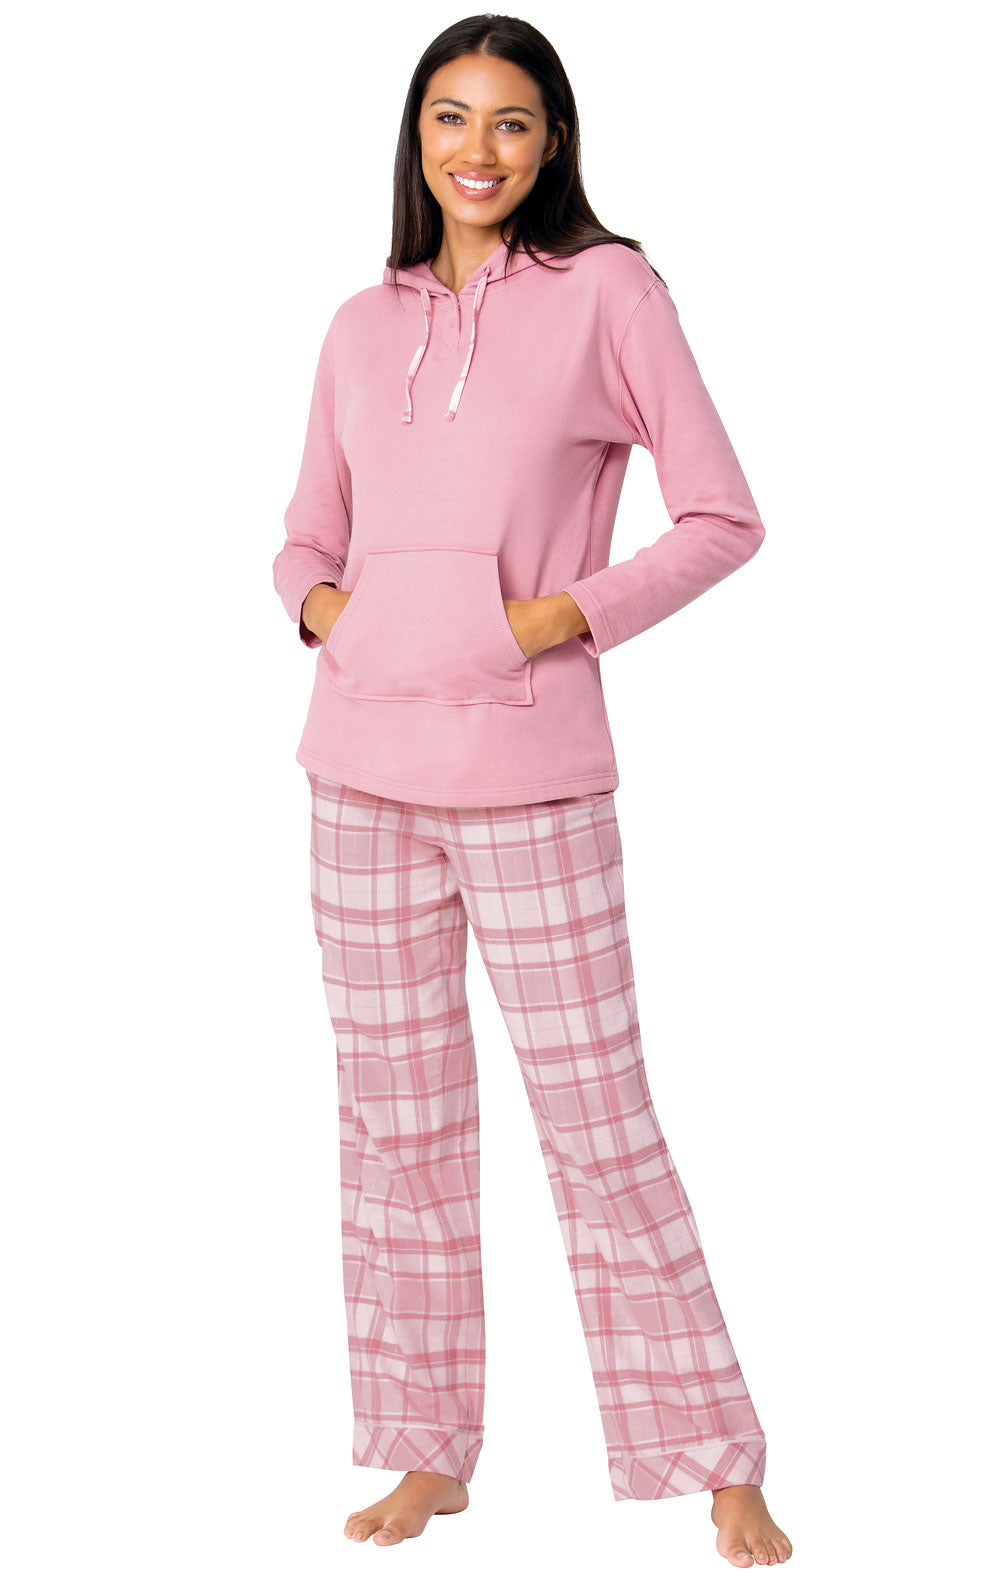 Glitzy Pink Plaid Hooded Pajamas